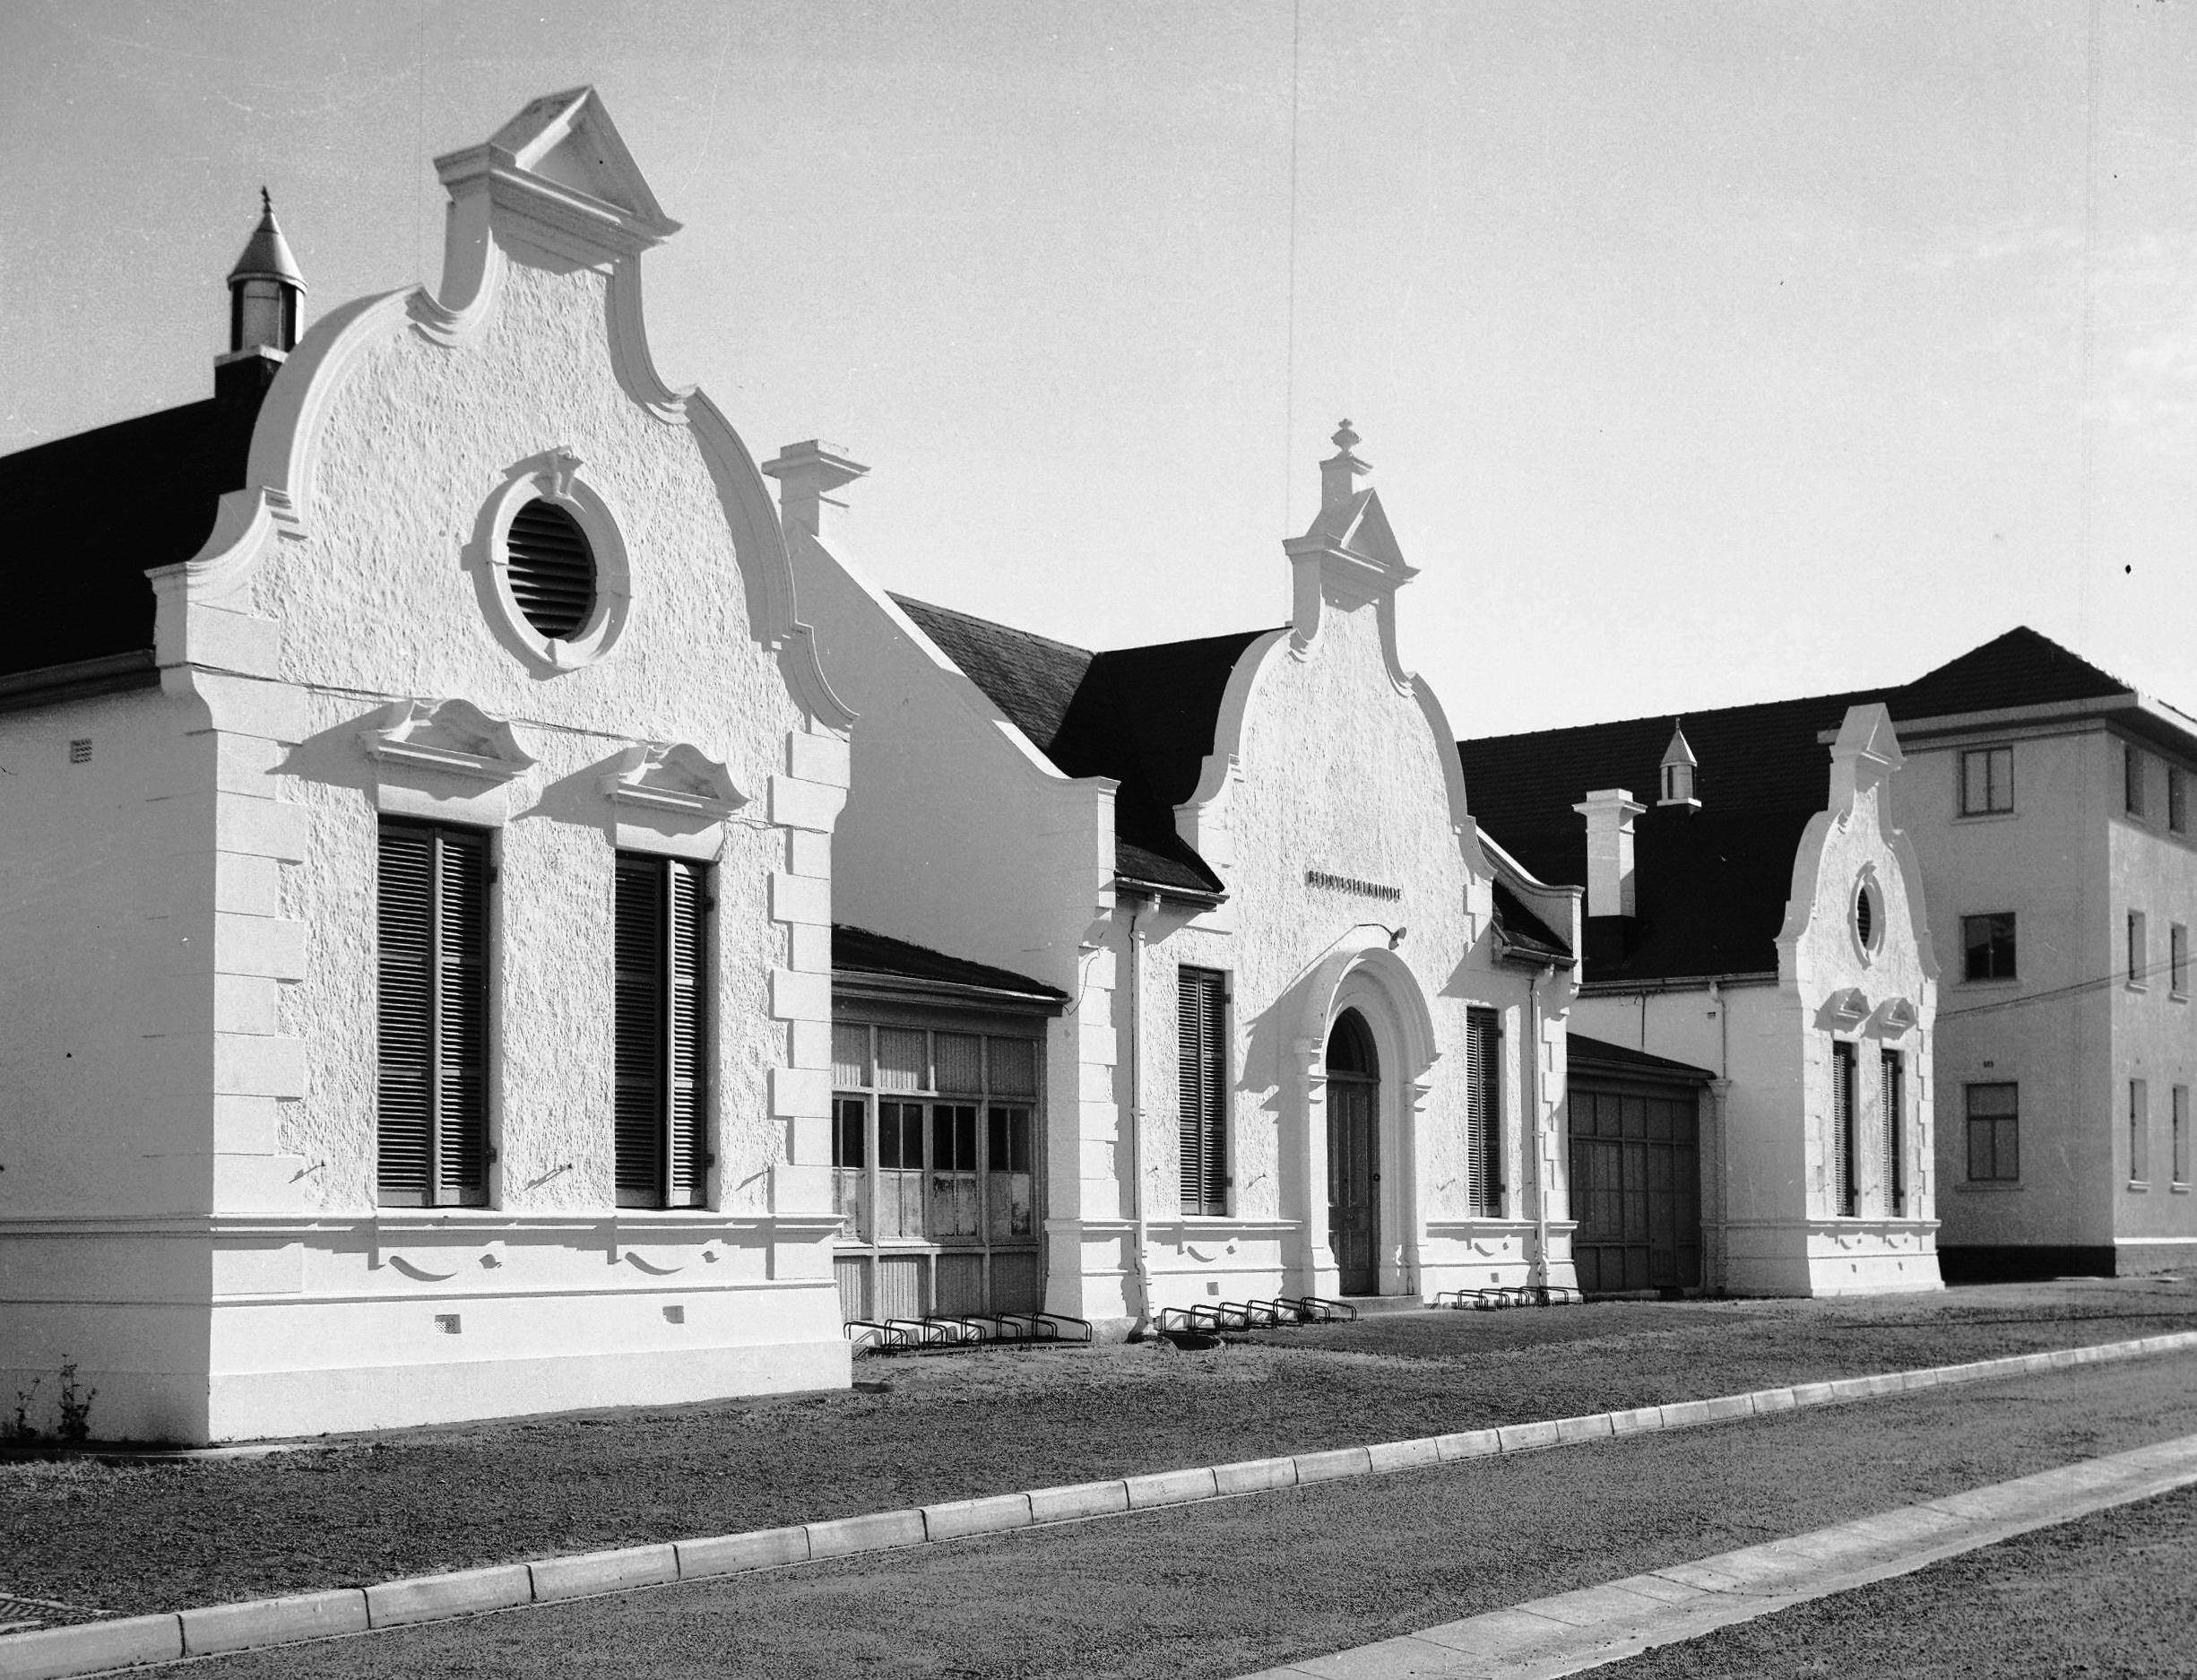 1977 - Stellenbosch hospital building demolished